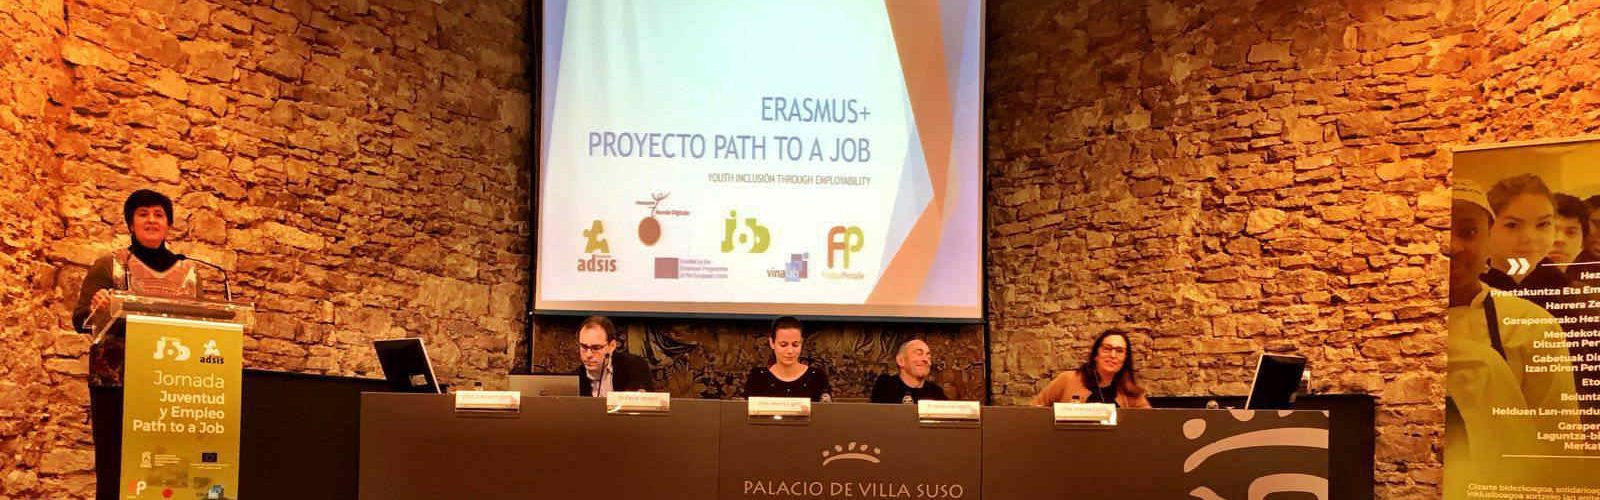 Tancament d’Erasmus +, Path to a Job amb l’Ajuntament de Vinaròs